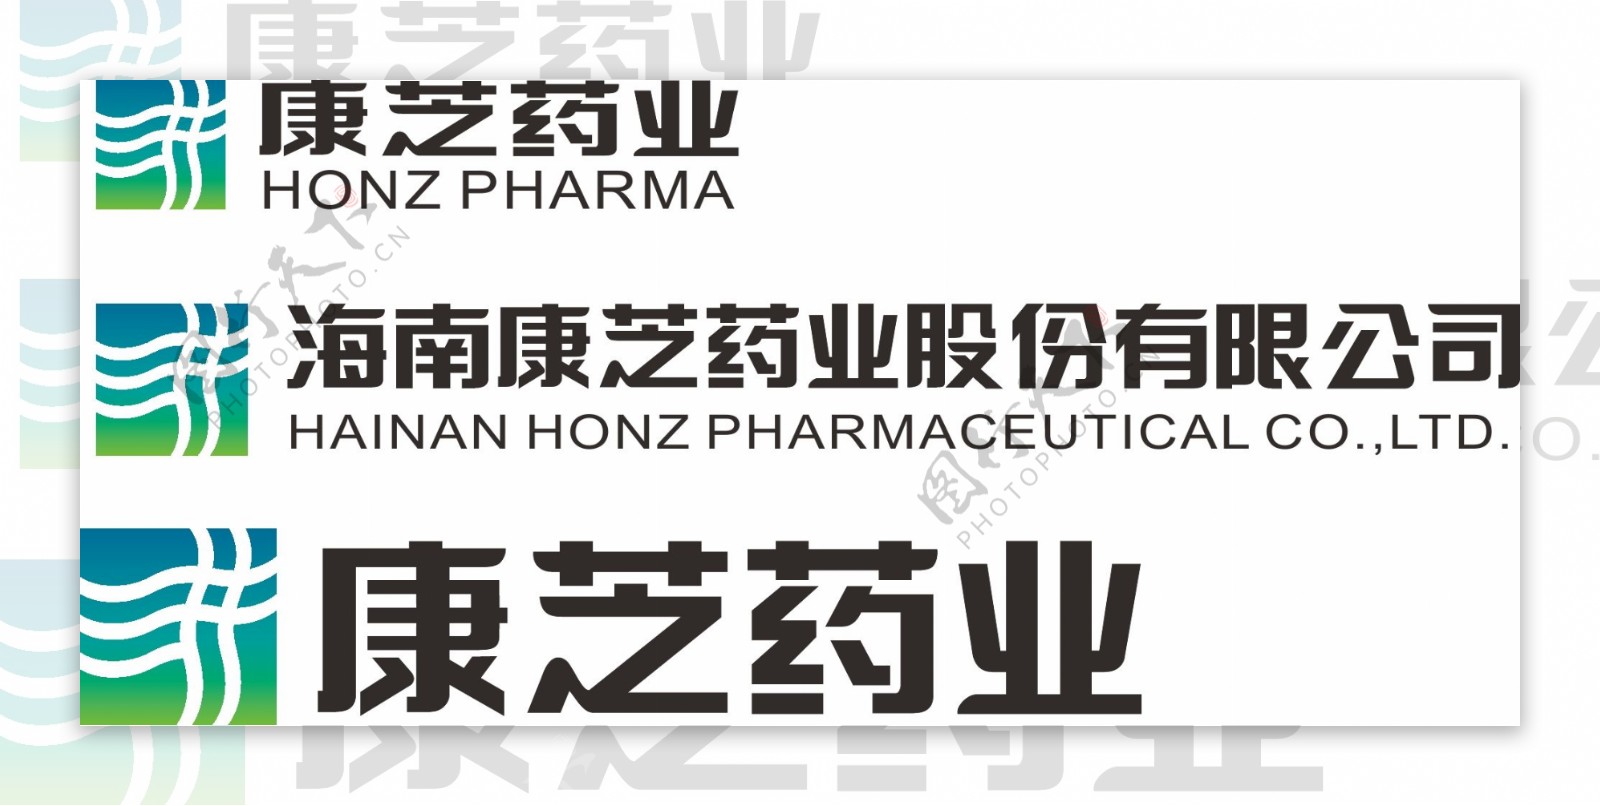 康芝药业logo图片